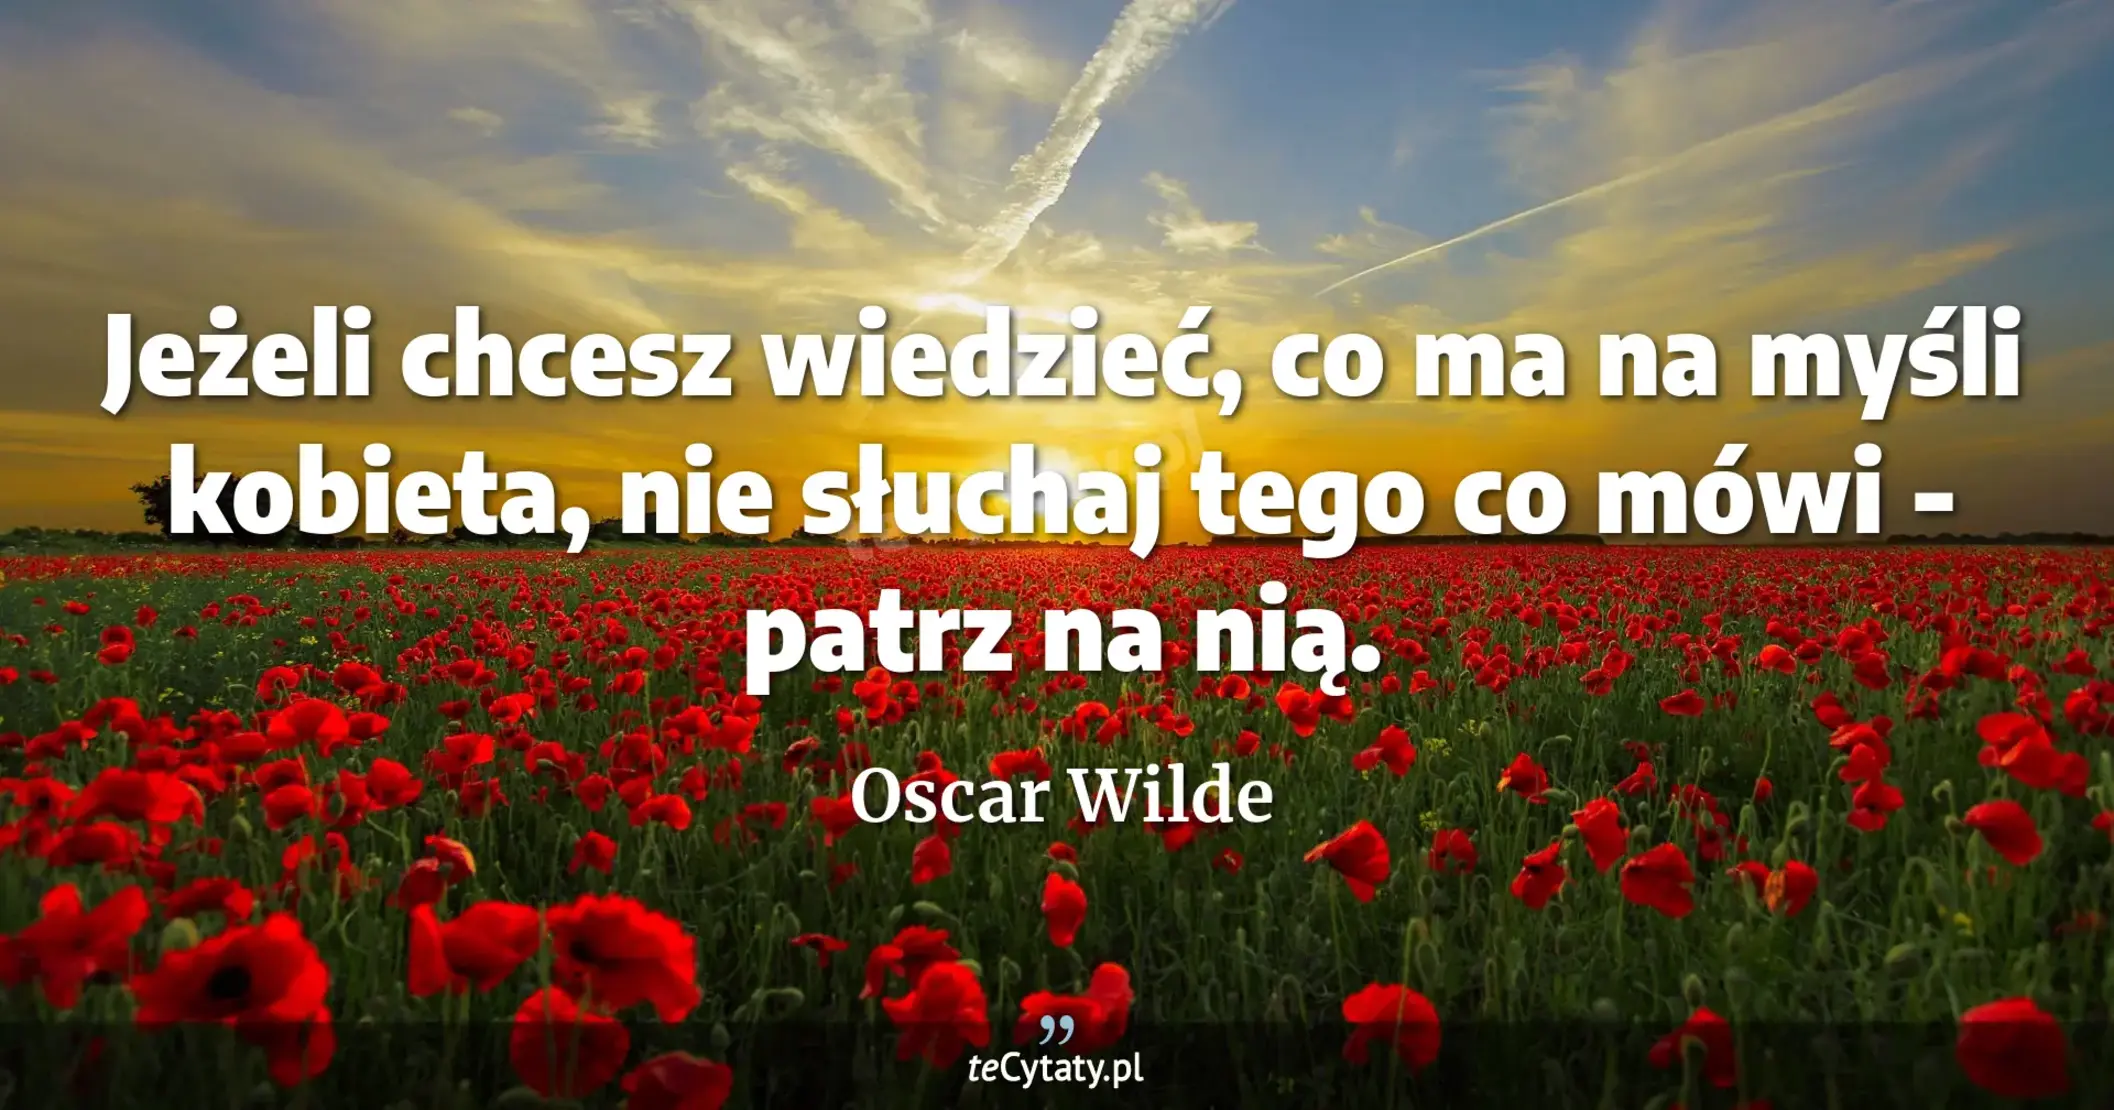 Jeżeli chcesz wiedzieć, co ma na myśli kobieta, nie słuchaj tego co mówi - patrz na nią. - Oscar Wilde